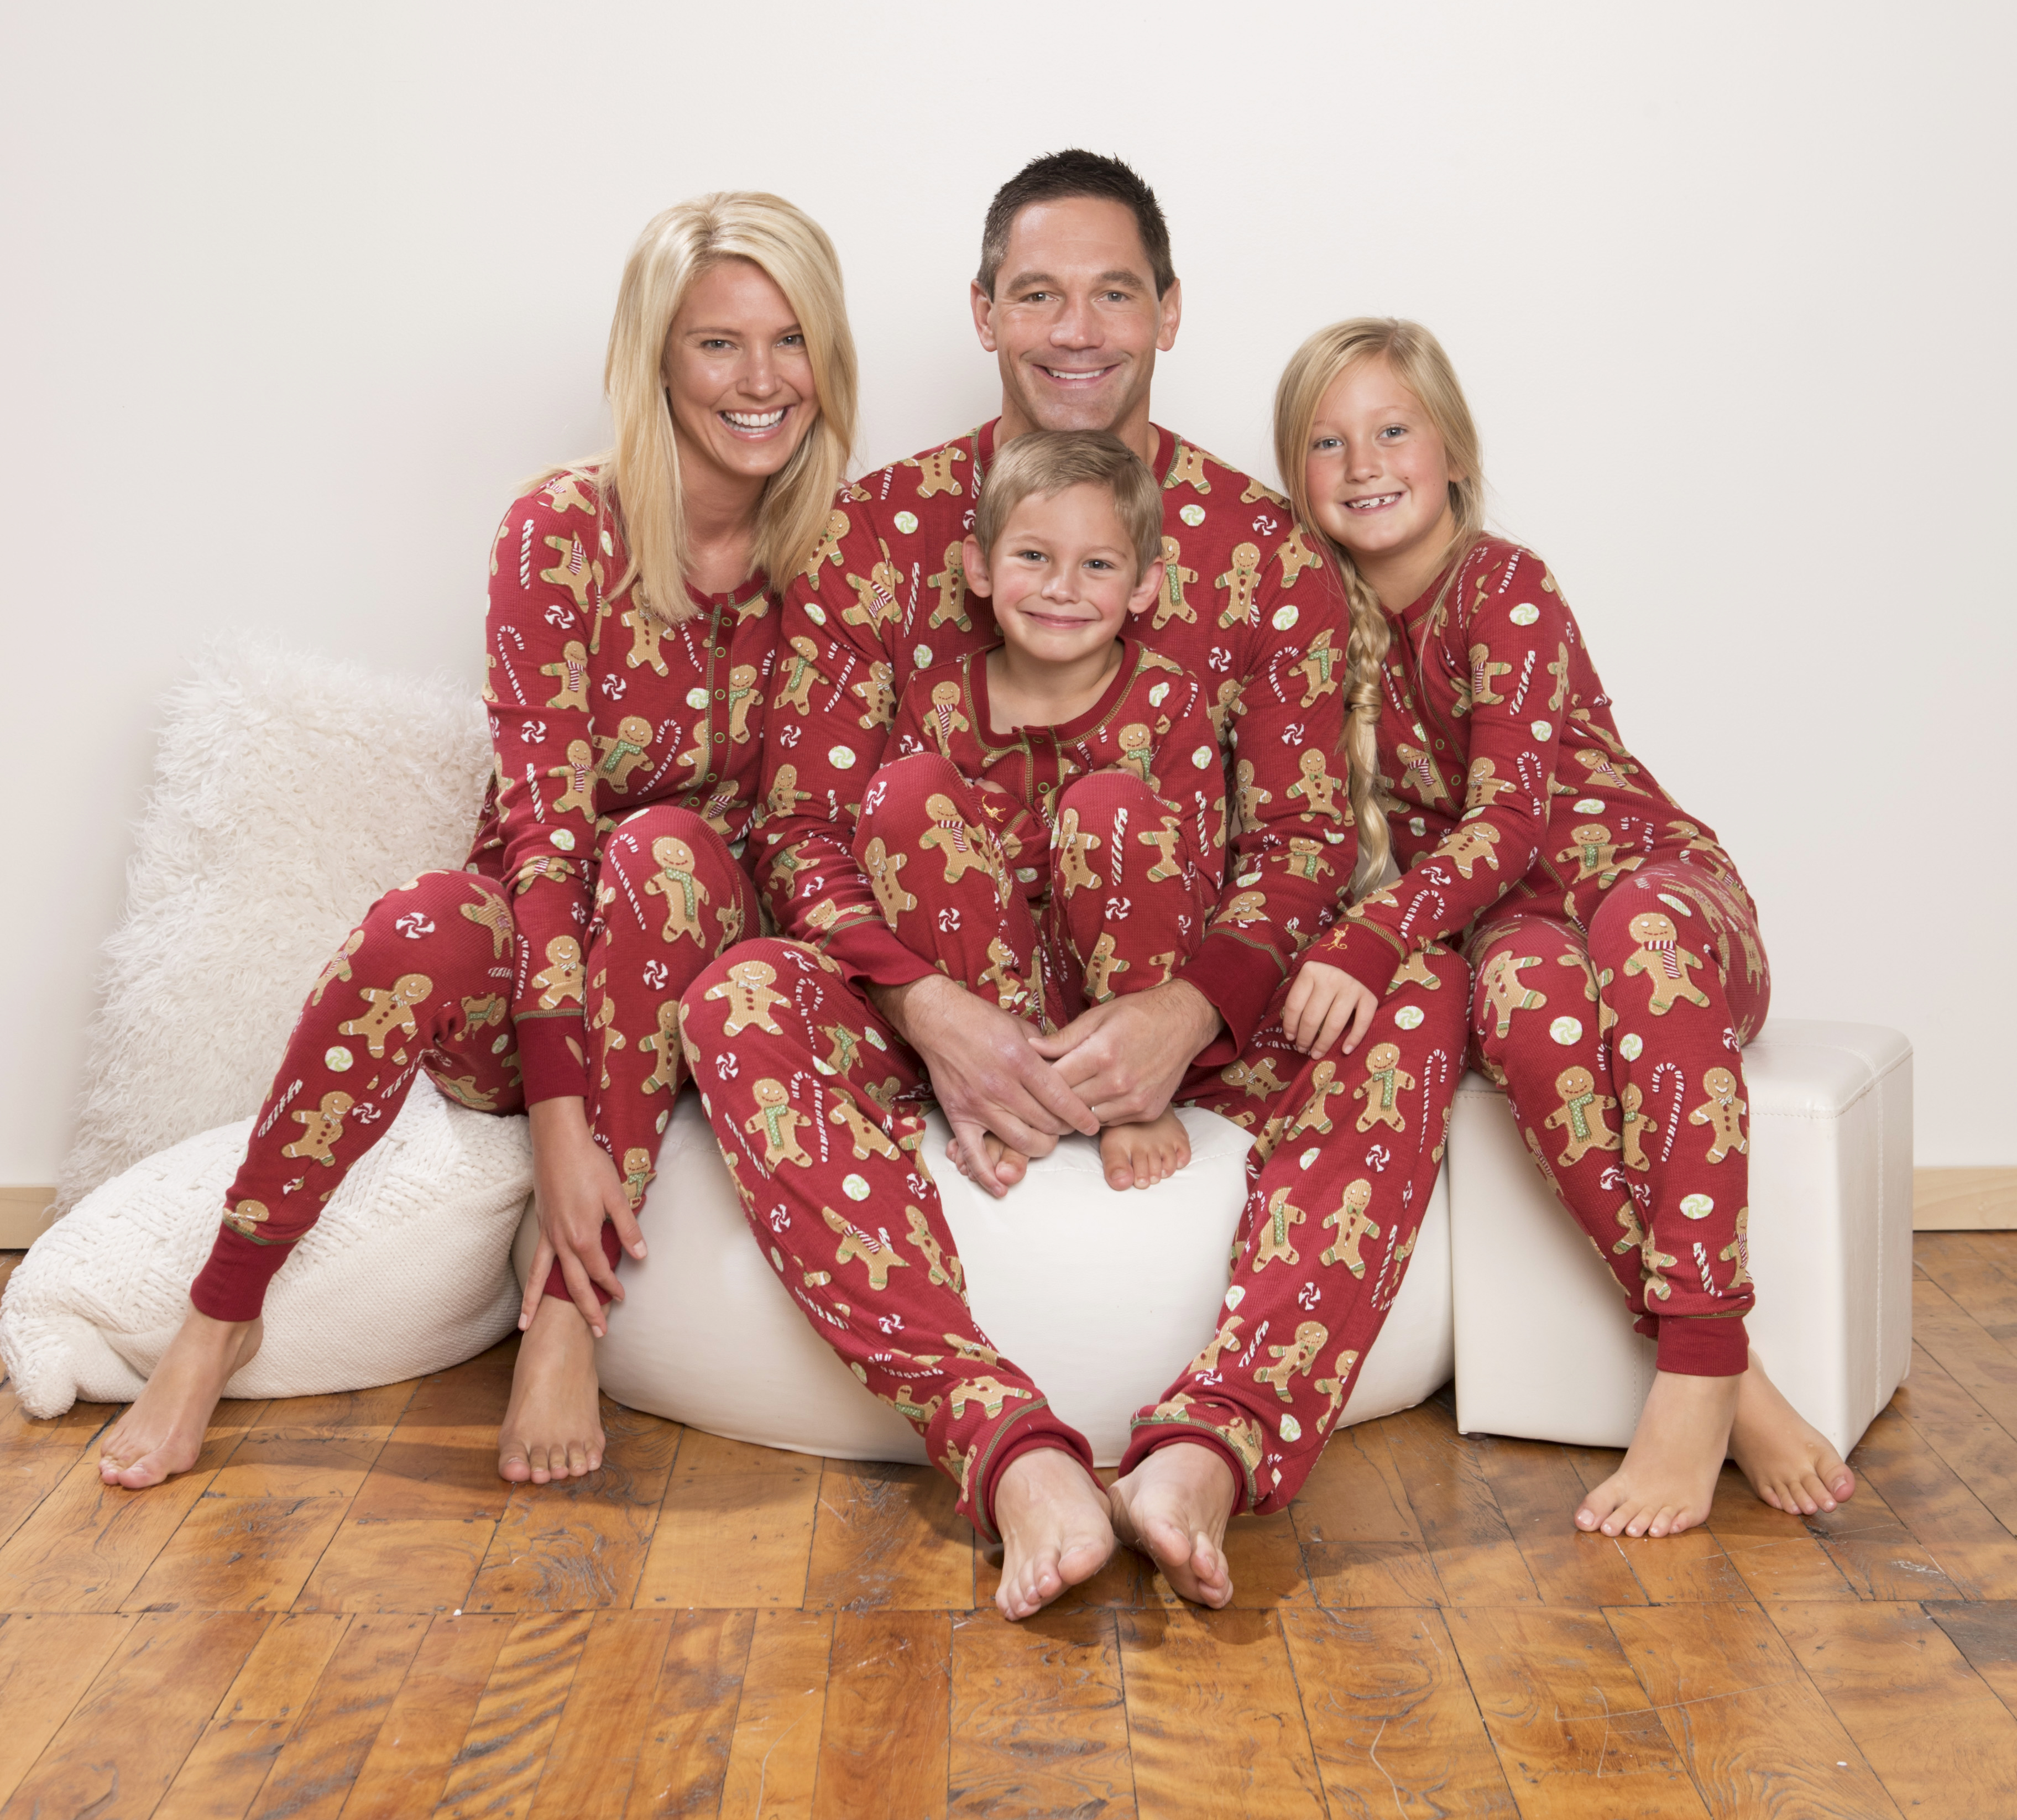 matching holiday pajamas from munki munki